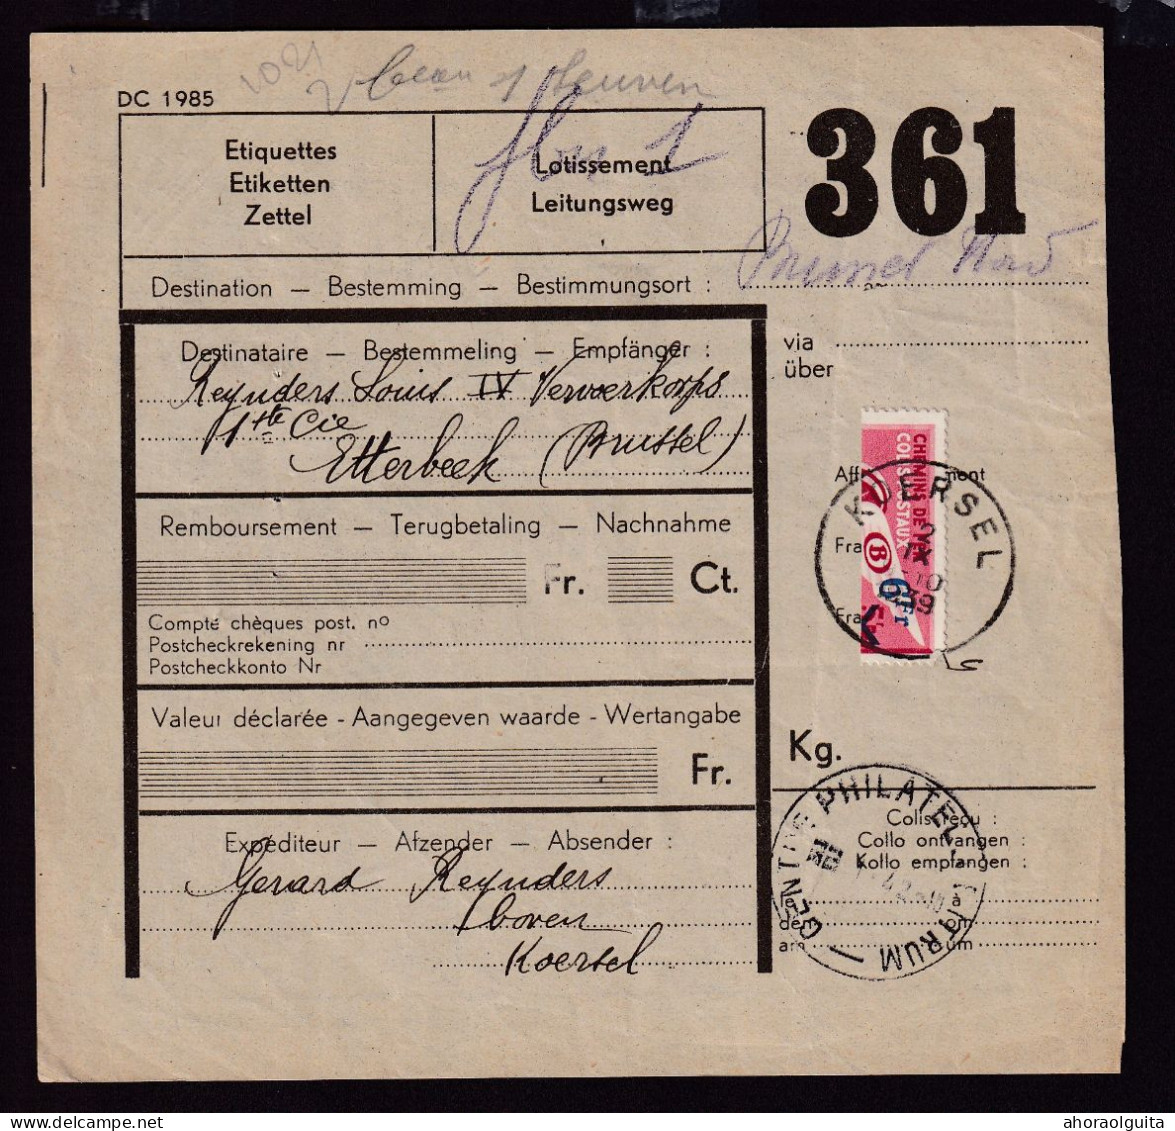 DDFF 765 -- Formule De Colis Militaire - TP Chemin De Fer Coupé En Deux Cachet Postal KOERSEL - 1er Jour 2 IX 1939 - Dokumente & Fragmente